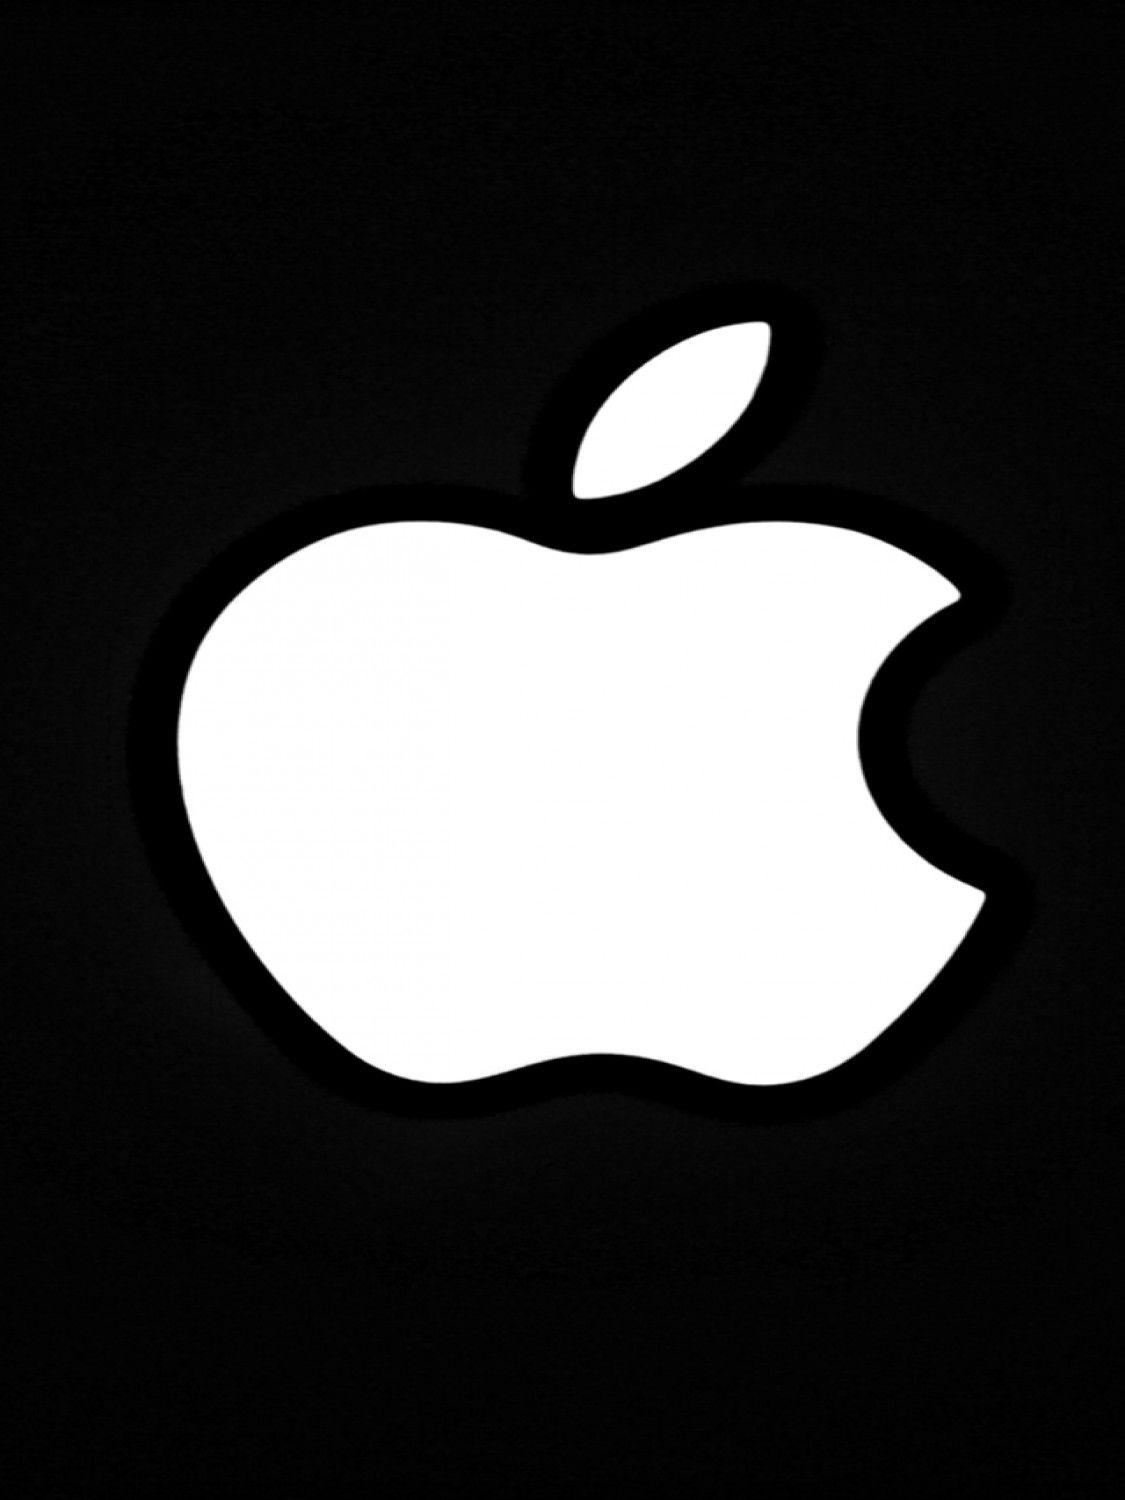 On Black Background iPhone Logo - Apple Logo Black Background